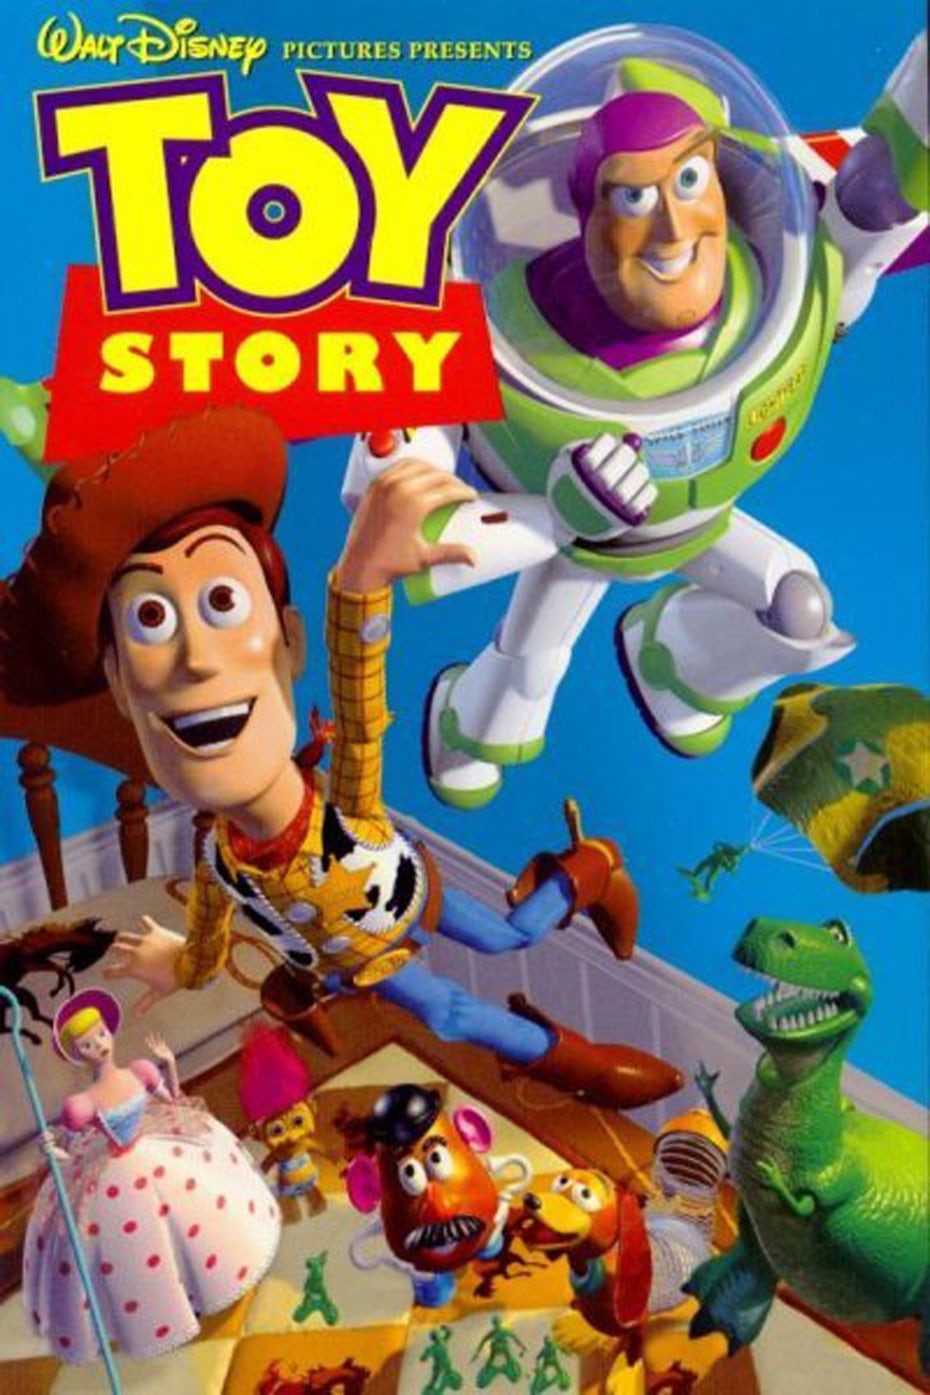  Плакат Toy Story "width =" 1200 "height =" 1800 "/> 
 
<figcaption> Rewatch Toy Story (1995) — первый в мире фильм со 100% компьютерной графикой все еще выглядит лучше, чем некоторые современные графики, сделанные более чем в 20 годы спустя Via Pixar </figcaption></figure>
<p> Но чем сложнее становятся методы анимации, тем и обсуждаются темы, которые они обсуждают. Хотя CGI используется практически в каждом фильме сегодня, даже полностью анимированные функции могут понравиться взрослым — просто посмотрите на популярные анимационные ситкомы, такие как <em> The Simpsons </em><em> Family Guy </em> или <em> South Park </em>. </p>
<p>.</p>
<p> Возможно, самая большая сила не в том, что он обращается к разным группам, а ко всем группам одновременно. Анимация позволяет художникам вызывать это детское удивление и страх не верить нашим глазам, а использовать эту силу для более зрелого рассказывания историй и даже бизнеса, как мы объясним ниже. </p>
<p> Как эта визуальная техника может понравиться как нашему внутреннему ребенку, так и нашему проницательному взрослому? Достаточно взглянуть на практически любой фильм <em> Pixar </em>. Это безопасное место — вы собираетесь сказать мне, что у вас не было туманных глаз в течение первых десяти минут <em> Up </em>? </p>
<h2> Обзор анимации для бизнеса: Looney Tunes для финансовых благ <br /> — </h2>
<p> Помимо кино и телевидения, анимация становится любимой техникой бизнеса в цифровом пространстве. В частности, анимация улучшает дизайн веб-приложений и цифровых маркетинговых кампаний благодаря своим практическим преимуществам так же, как и развлекательный фактор. </p>
<p> Движущаяся графика (то есть анимация таких элементов, как типографика, значки, изображения на месте и т. Д.) Предназначена для объяснения концепций с использованием движения, таких как анимированные объекты в веб-дизайне. Хотя анимационная графика не так сосредоточена на рассказывании историй, как анимационные, она все же воплощает в себе многие преимущества анимации, но по-другому. Размещение движущейся графики в нужных местах на веб-сайте может фактически улучшить работу вашего сайта, не говоря уже о вторичных восхитительных преимуществах: обучении посетителя тому, как использовать сайт быстро, эффективно и визуально. </p>
<figure data-id=